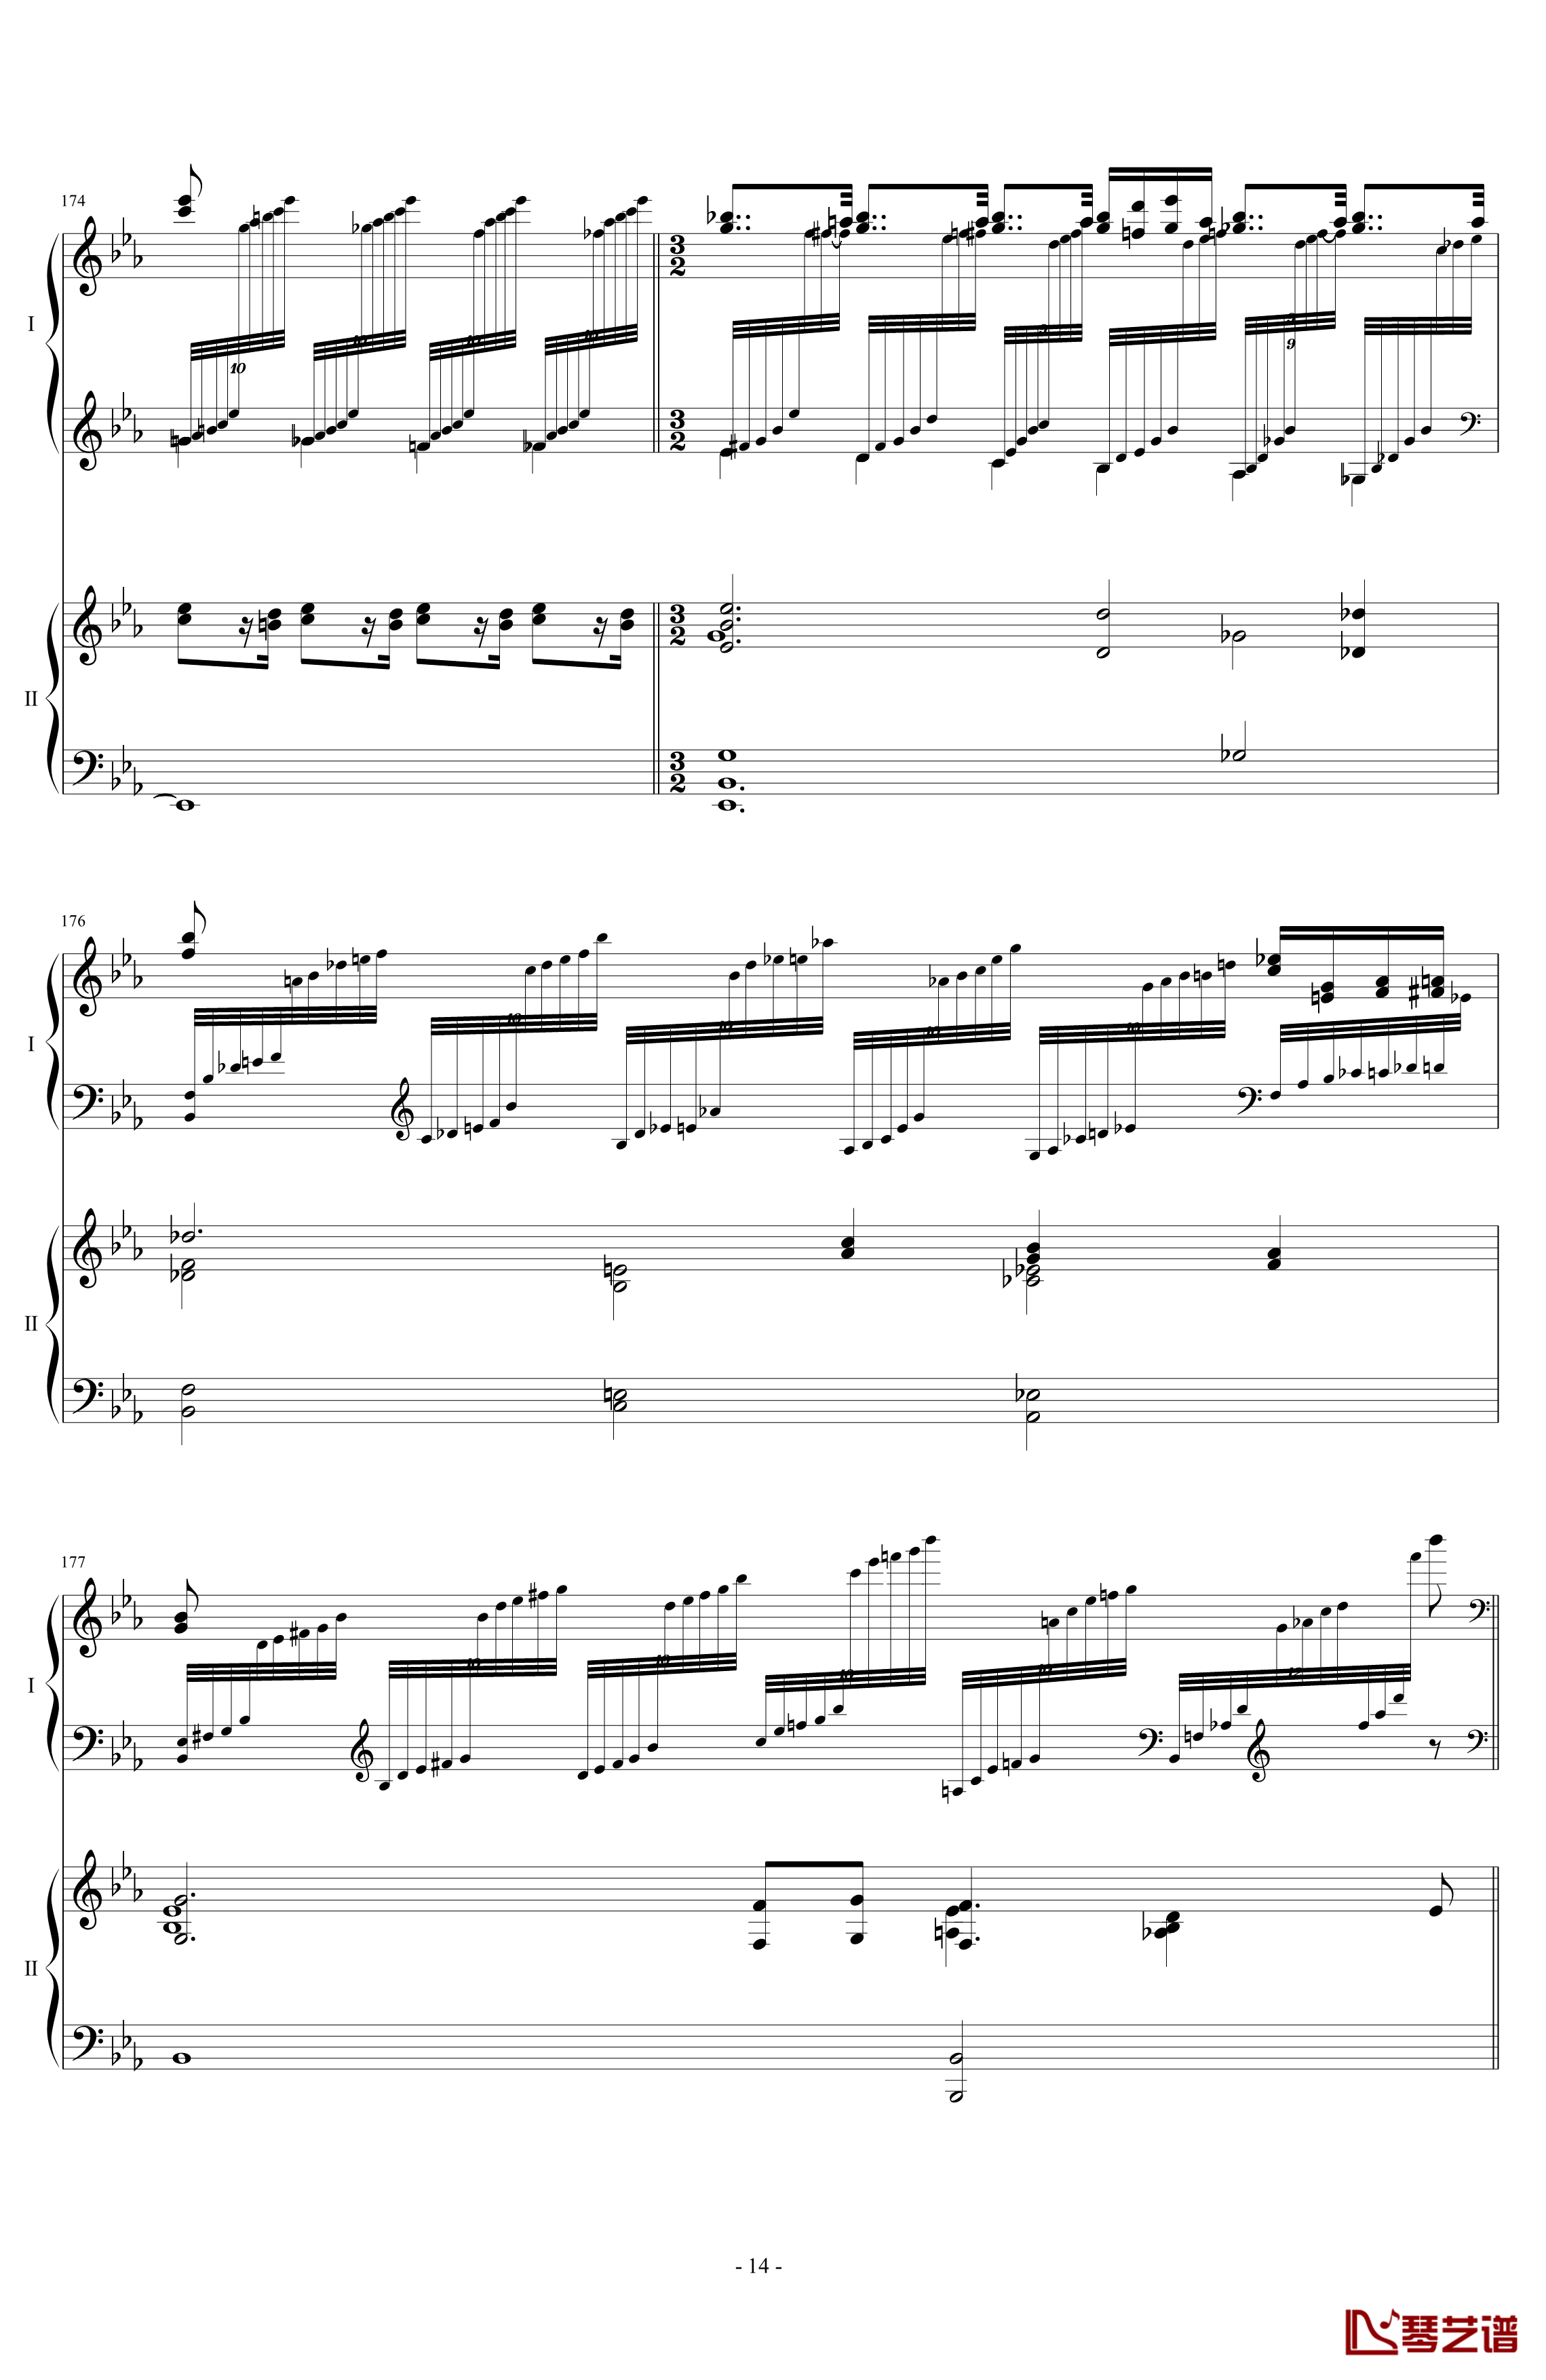 拉三第三乐章41页双钢琴钢琴谱-最难钢琴曲-拉赫马尼若夫14